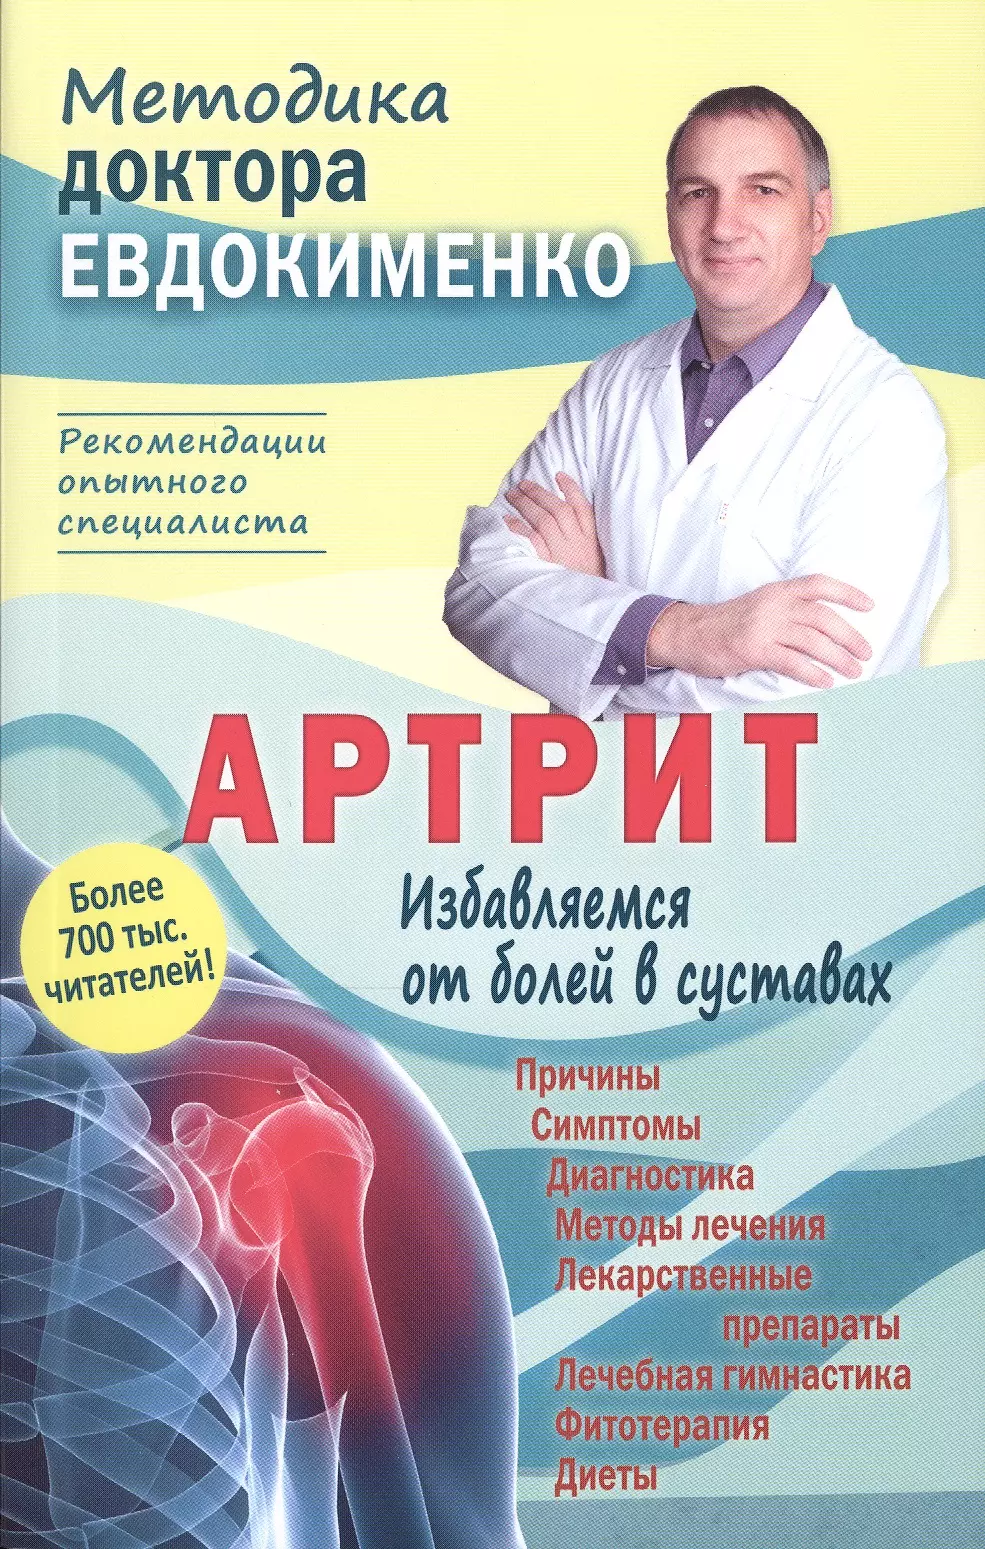 Евдокименко Павел Валериевич Артрит. Избавляемся от болей в суставах. 3-е издание, переработанное